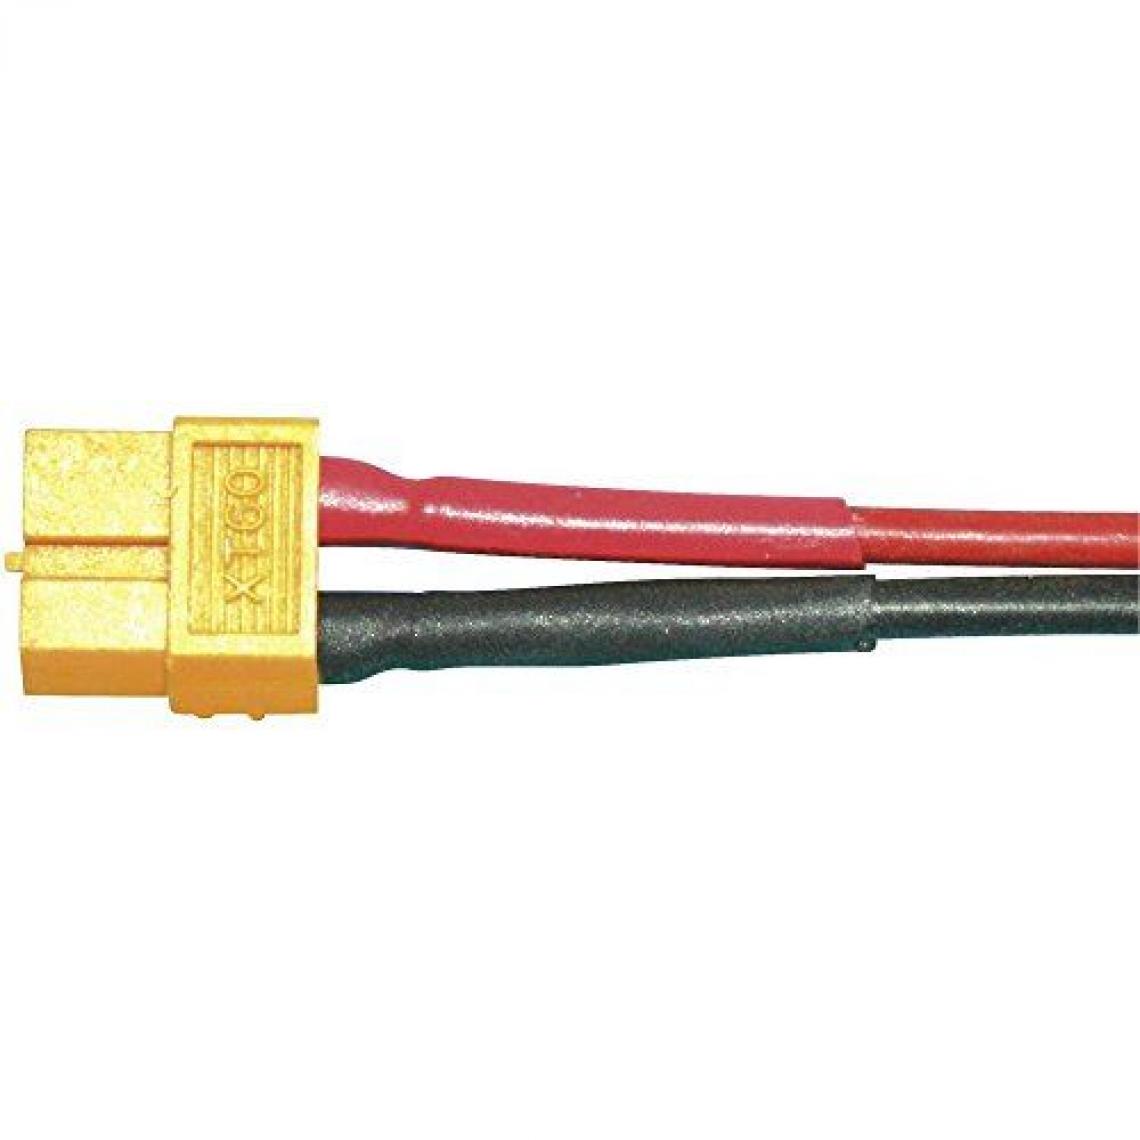 Modelcraft - Câble de raccordement pour accu Modelcraft 58368-10 [1x XT60 femelle - 1x extrémité(s) ouverte(s)] 100 mm 4.0 mm² - Accessoires et pièces